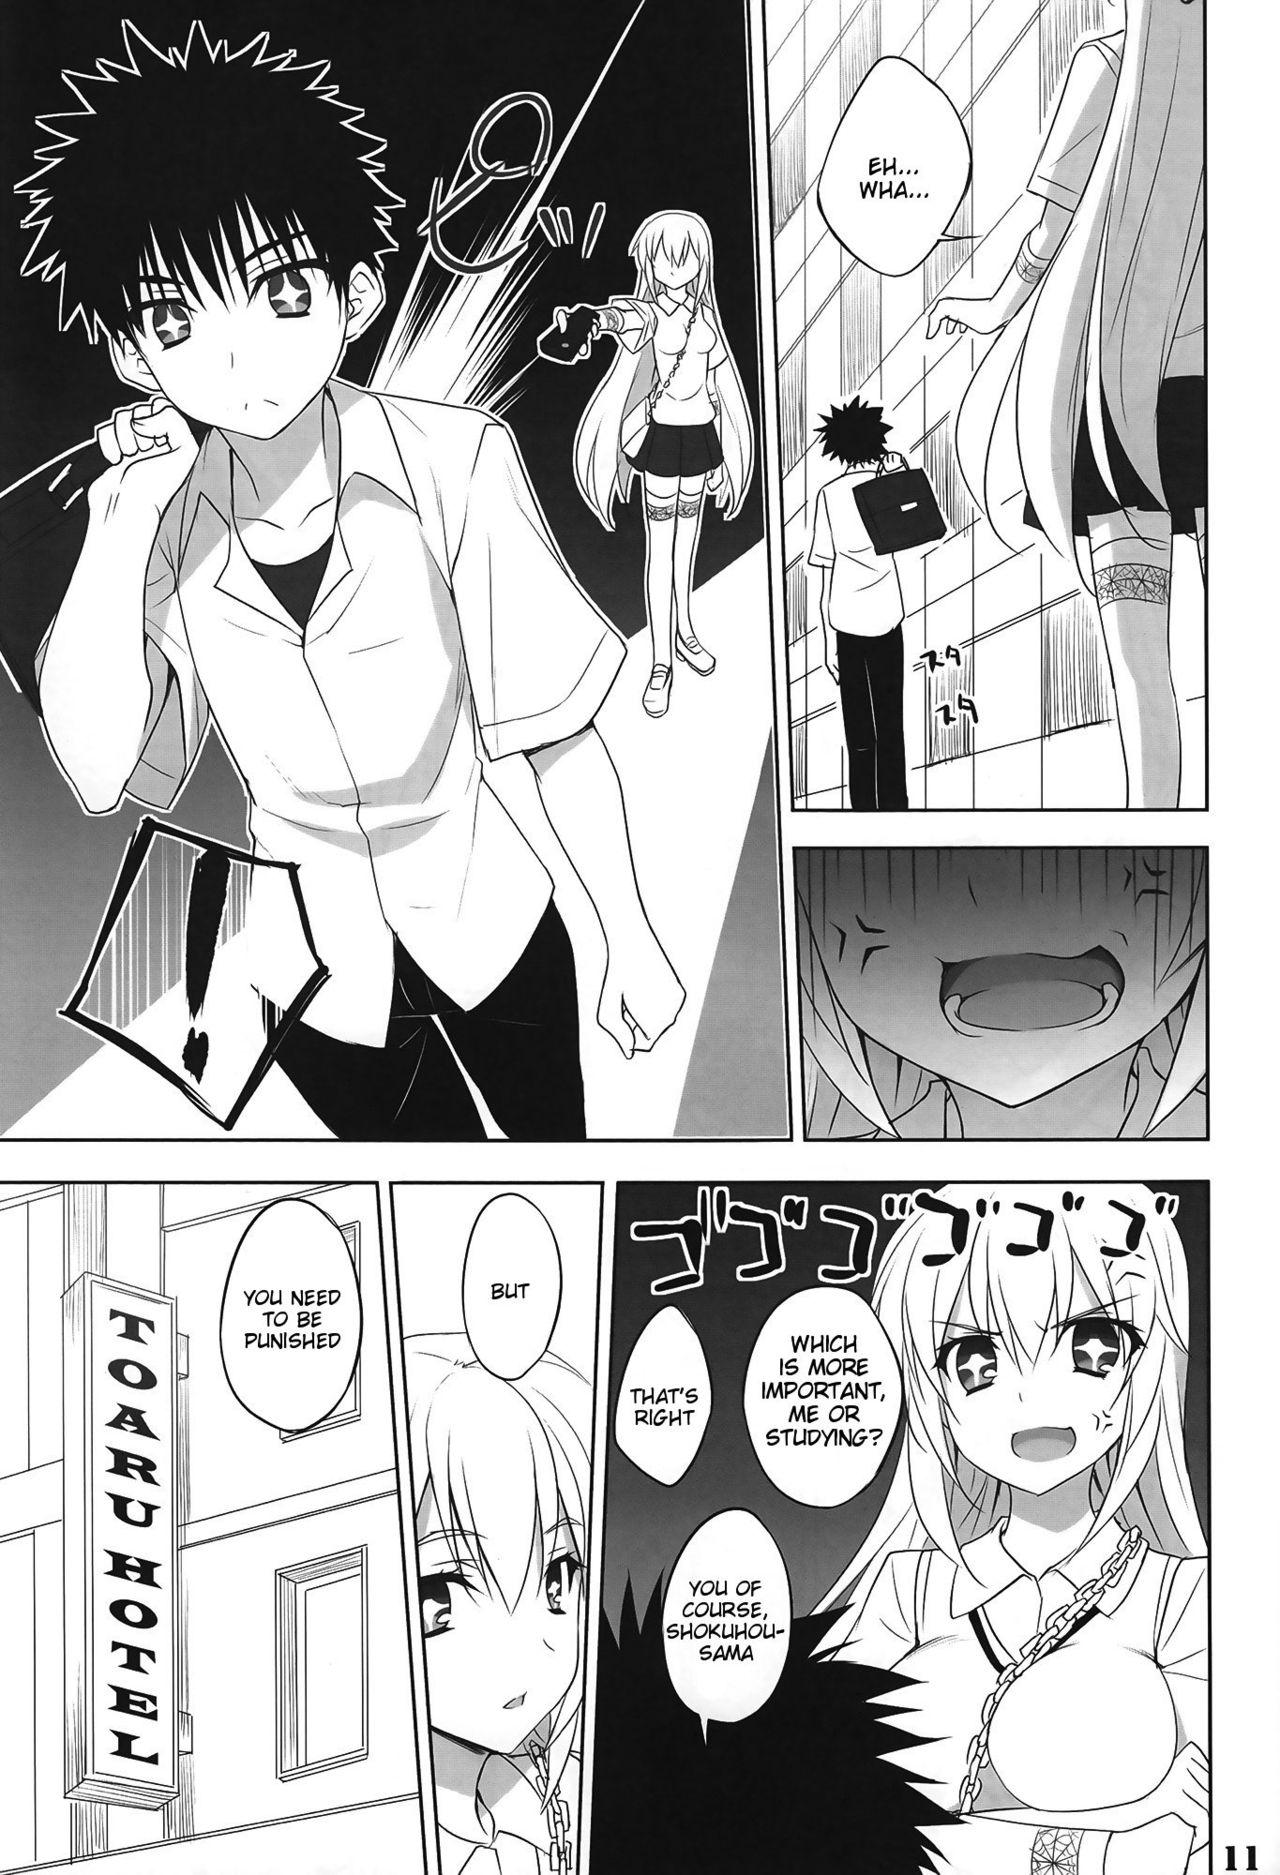 Comendo Toaru Shokuhou no Frustration - Toaru kagaku no railgun Body - Page 10